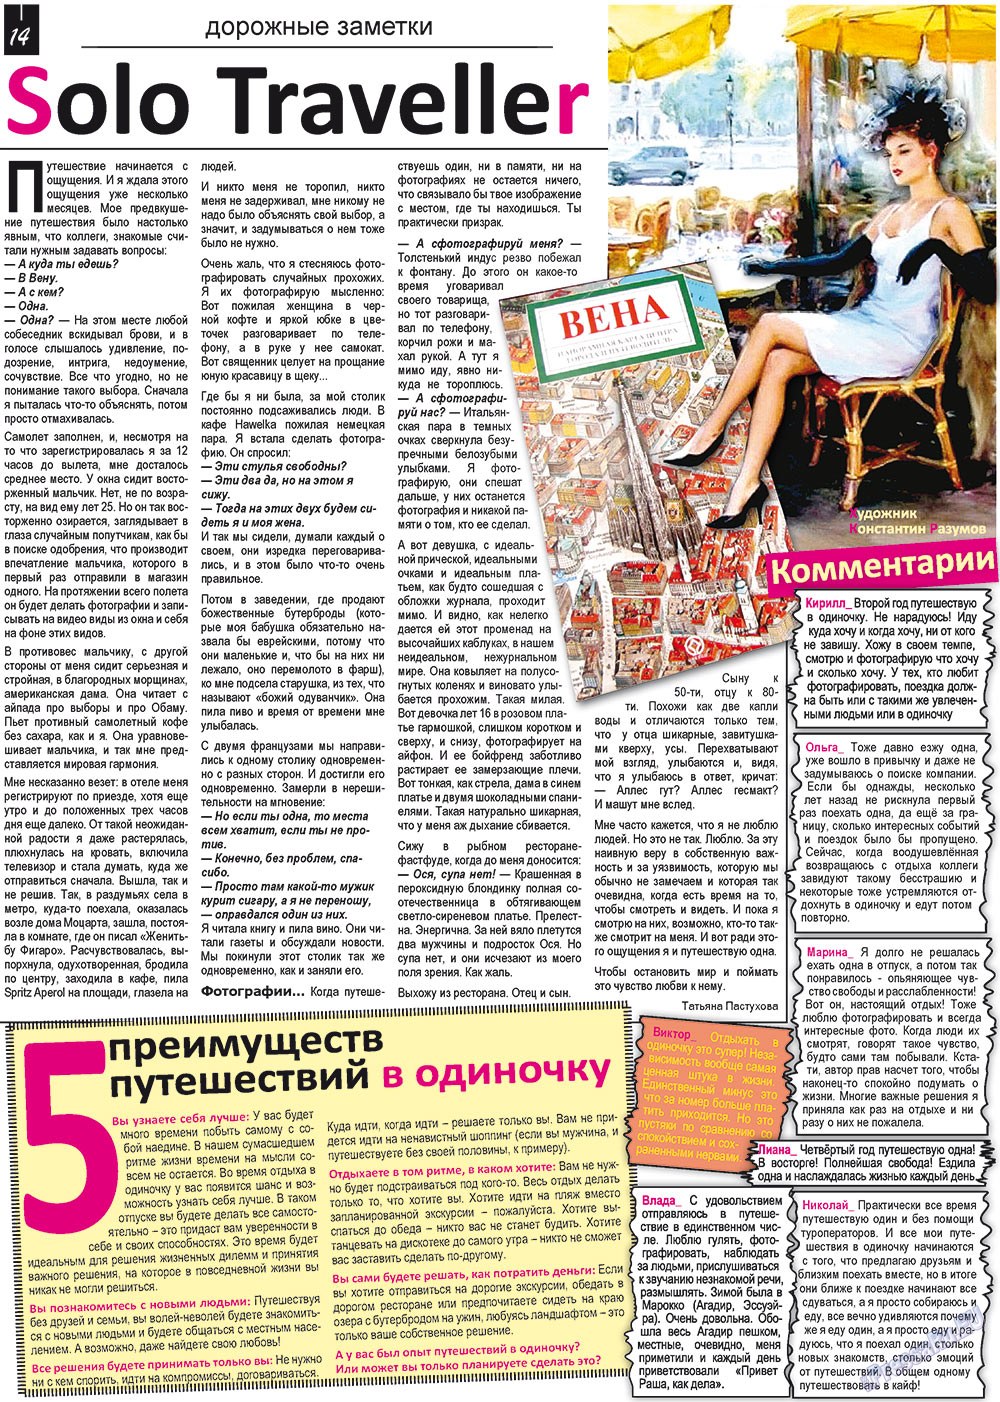 Все pro все (газета). 2012 год, номер 17, стр. 14